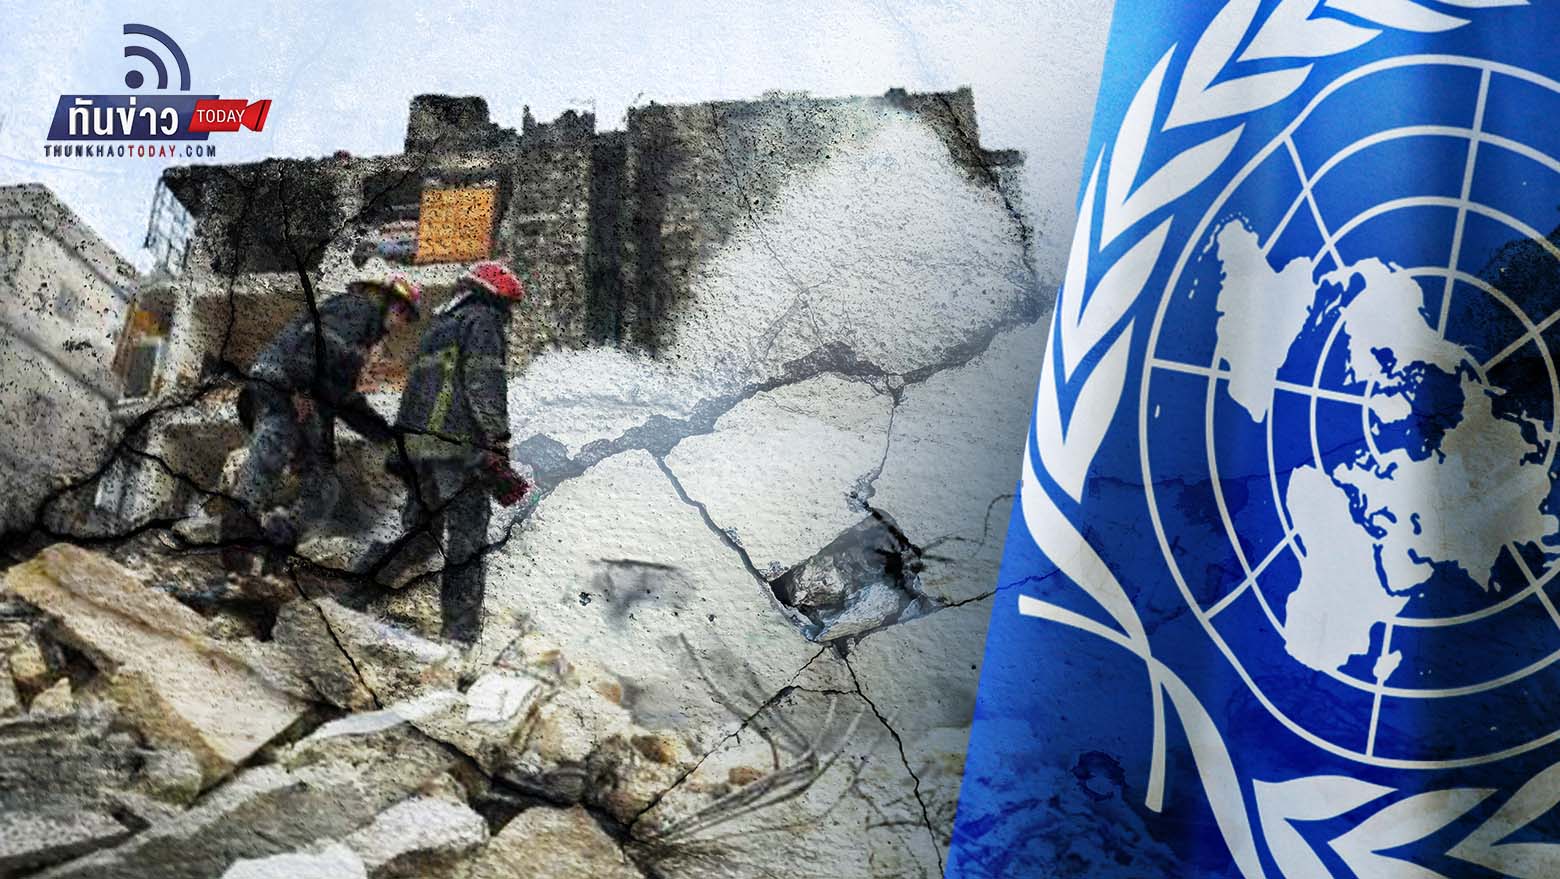 UN คาดผู้เสียชีวิตสูงถึง 5 หมื่นคน เหตุแผ่นดินไหวตุรกี-ซีเรีย ยังพบผู้รอดชีวิตเรื่อย ๆ แม้ผ่านไปกว่าสัปดาห์